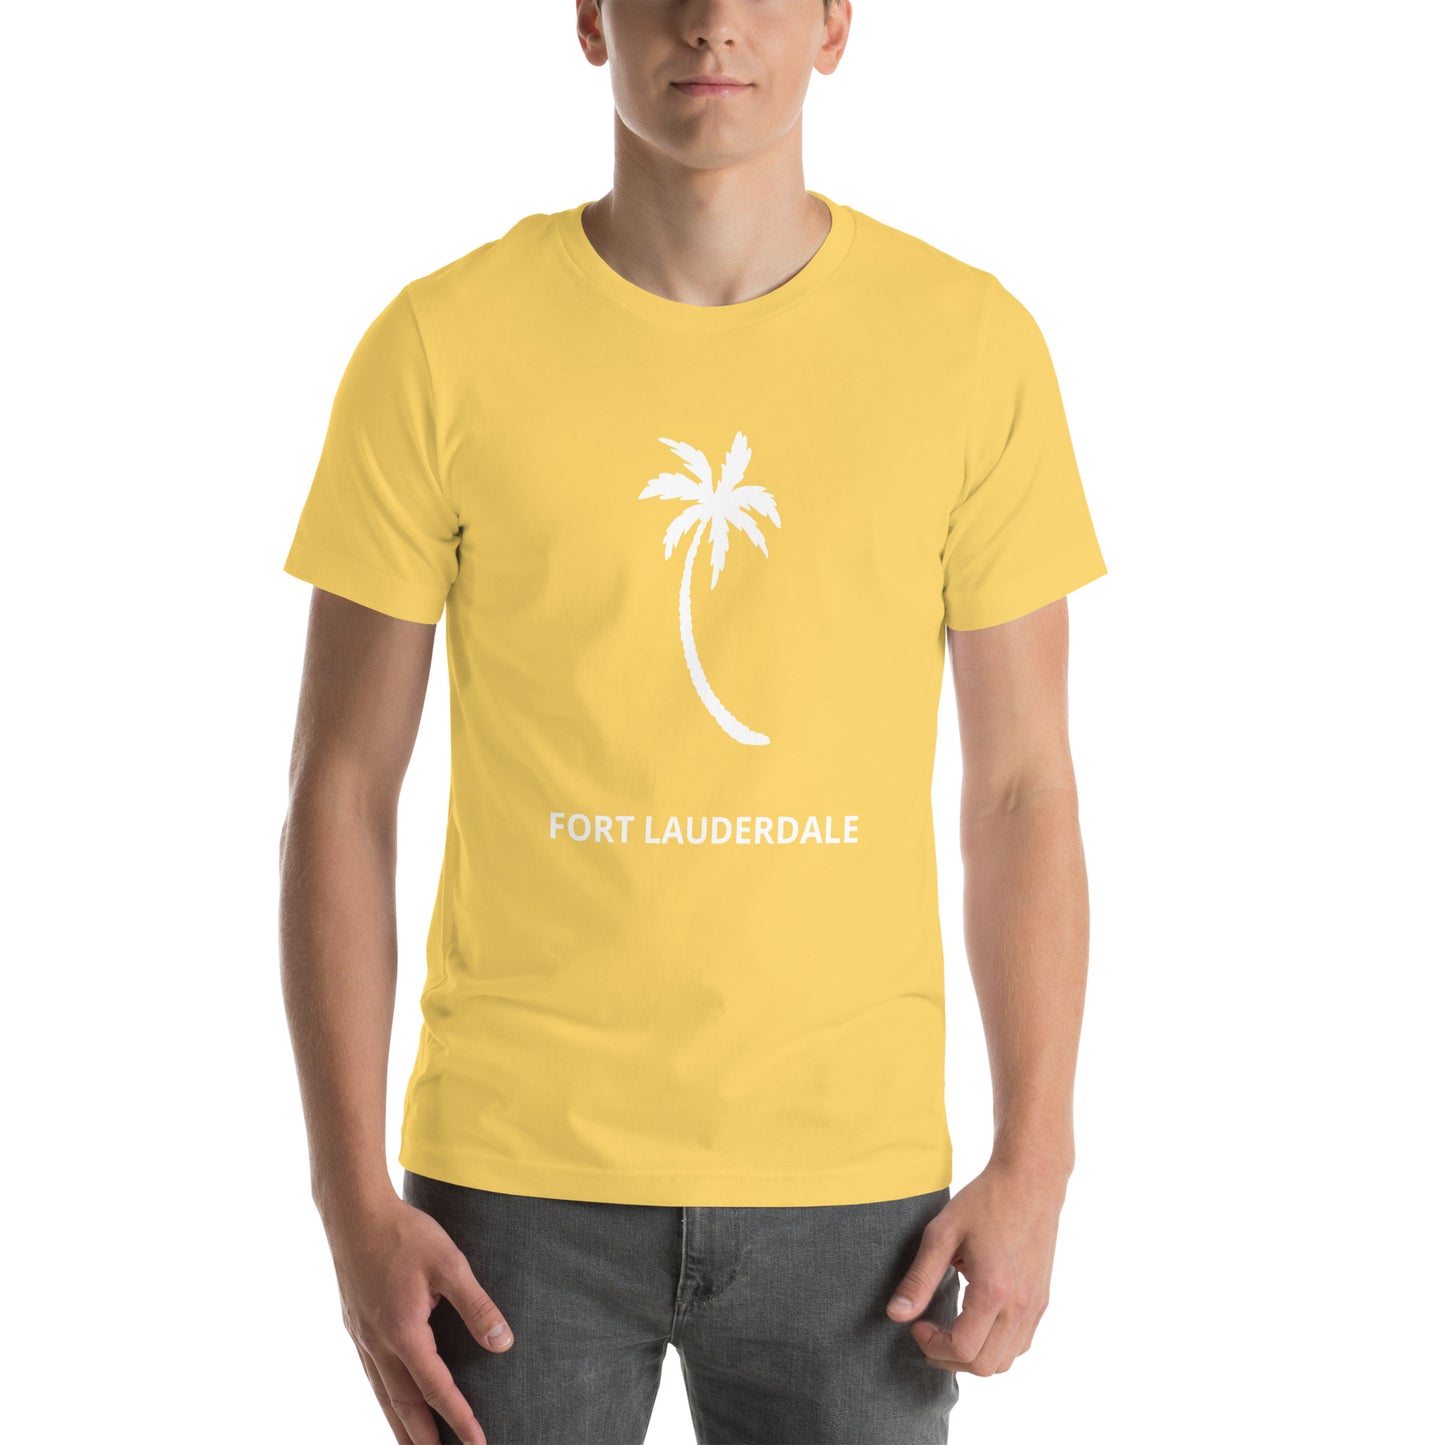 Fort Lauderdale unisex t-shirt